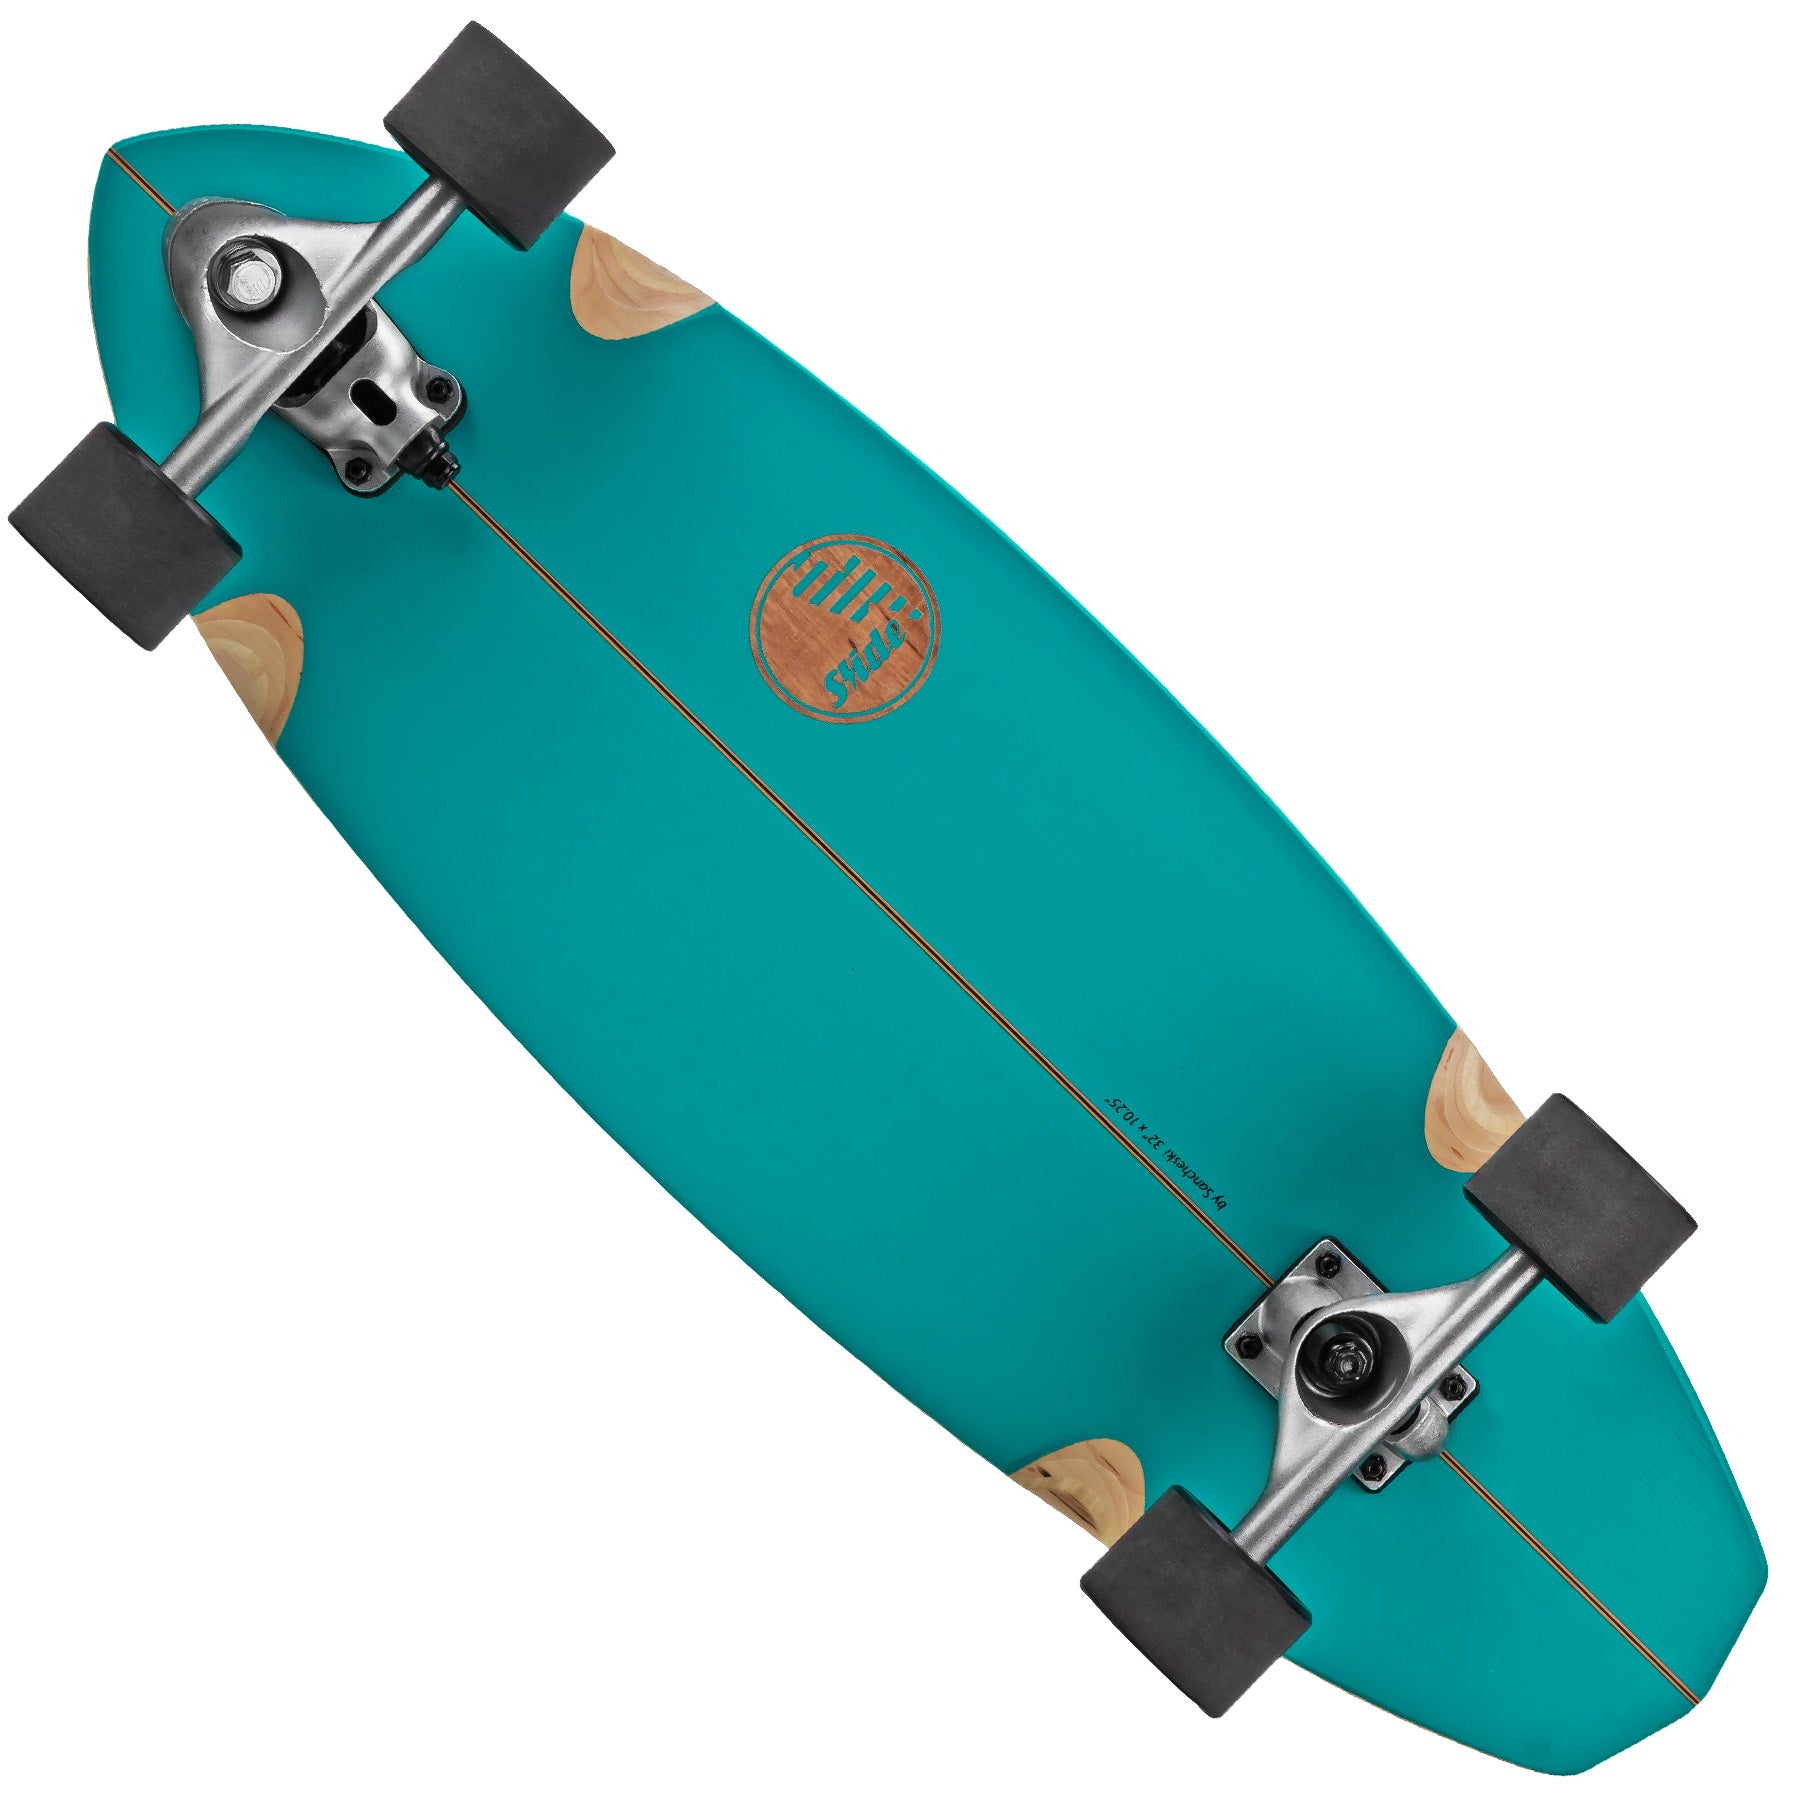 Slide Surfskate Street Surf SkateBoard – Roller Derby